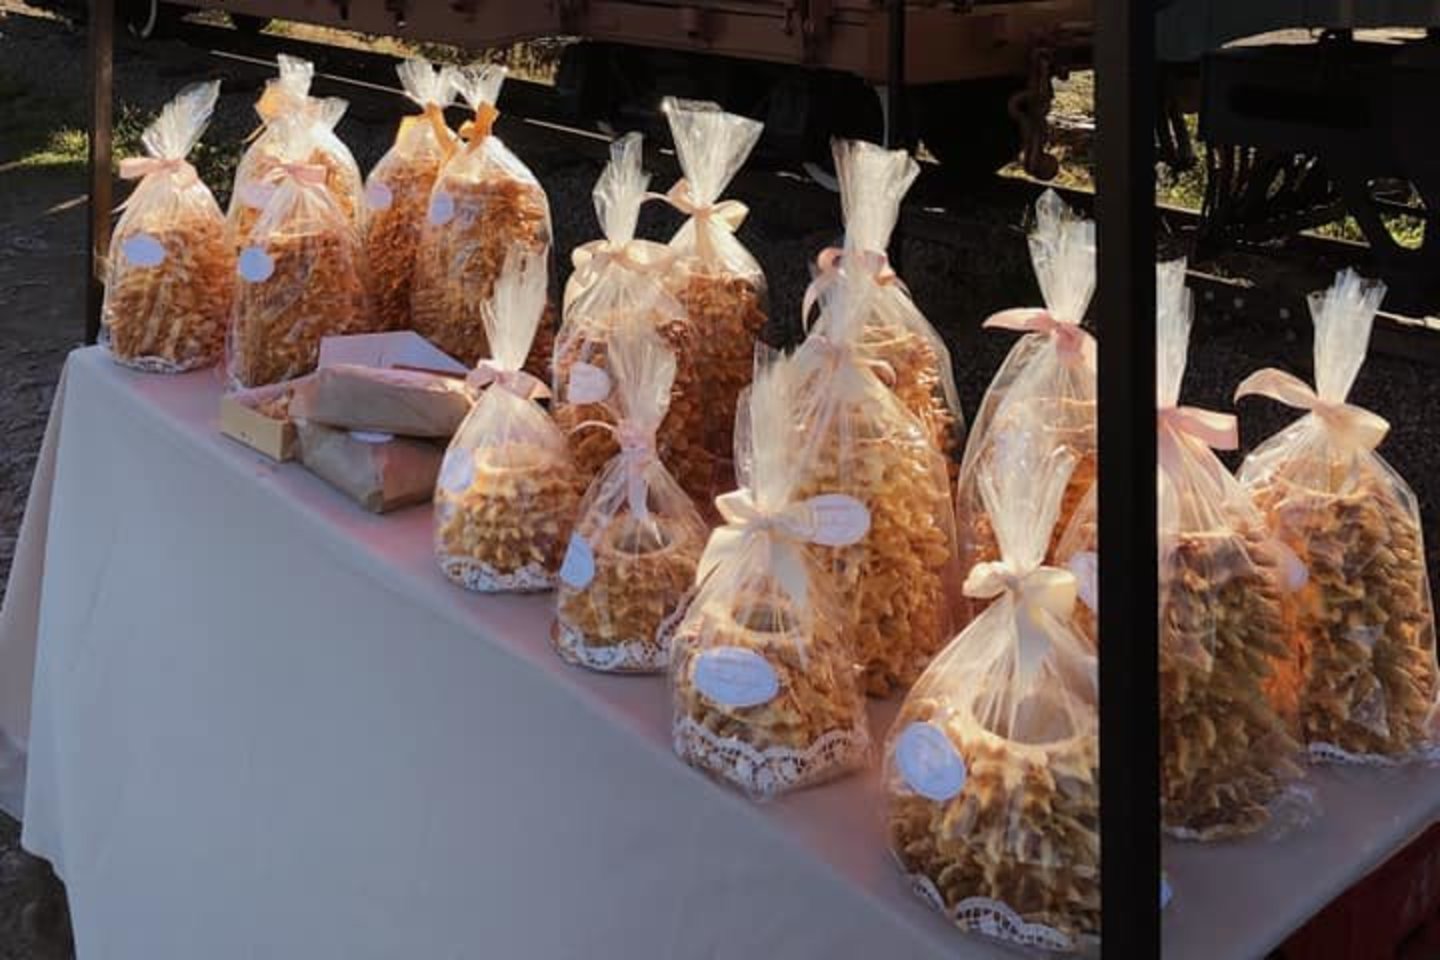 Penktadieniais „Tradicijos“ šakočiais prekiaujama turgelyje Pakruojyje.<br> Feisbuko nuotr.